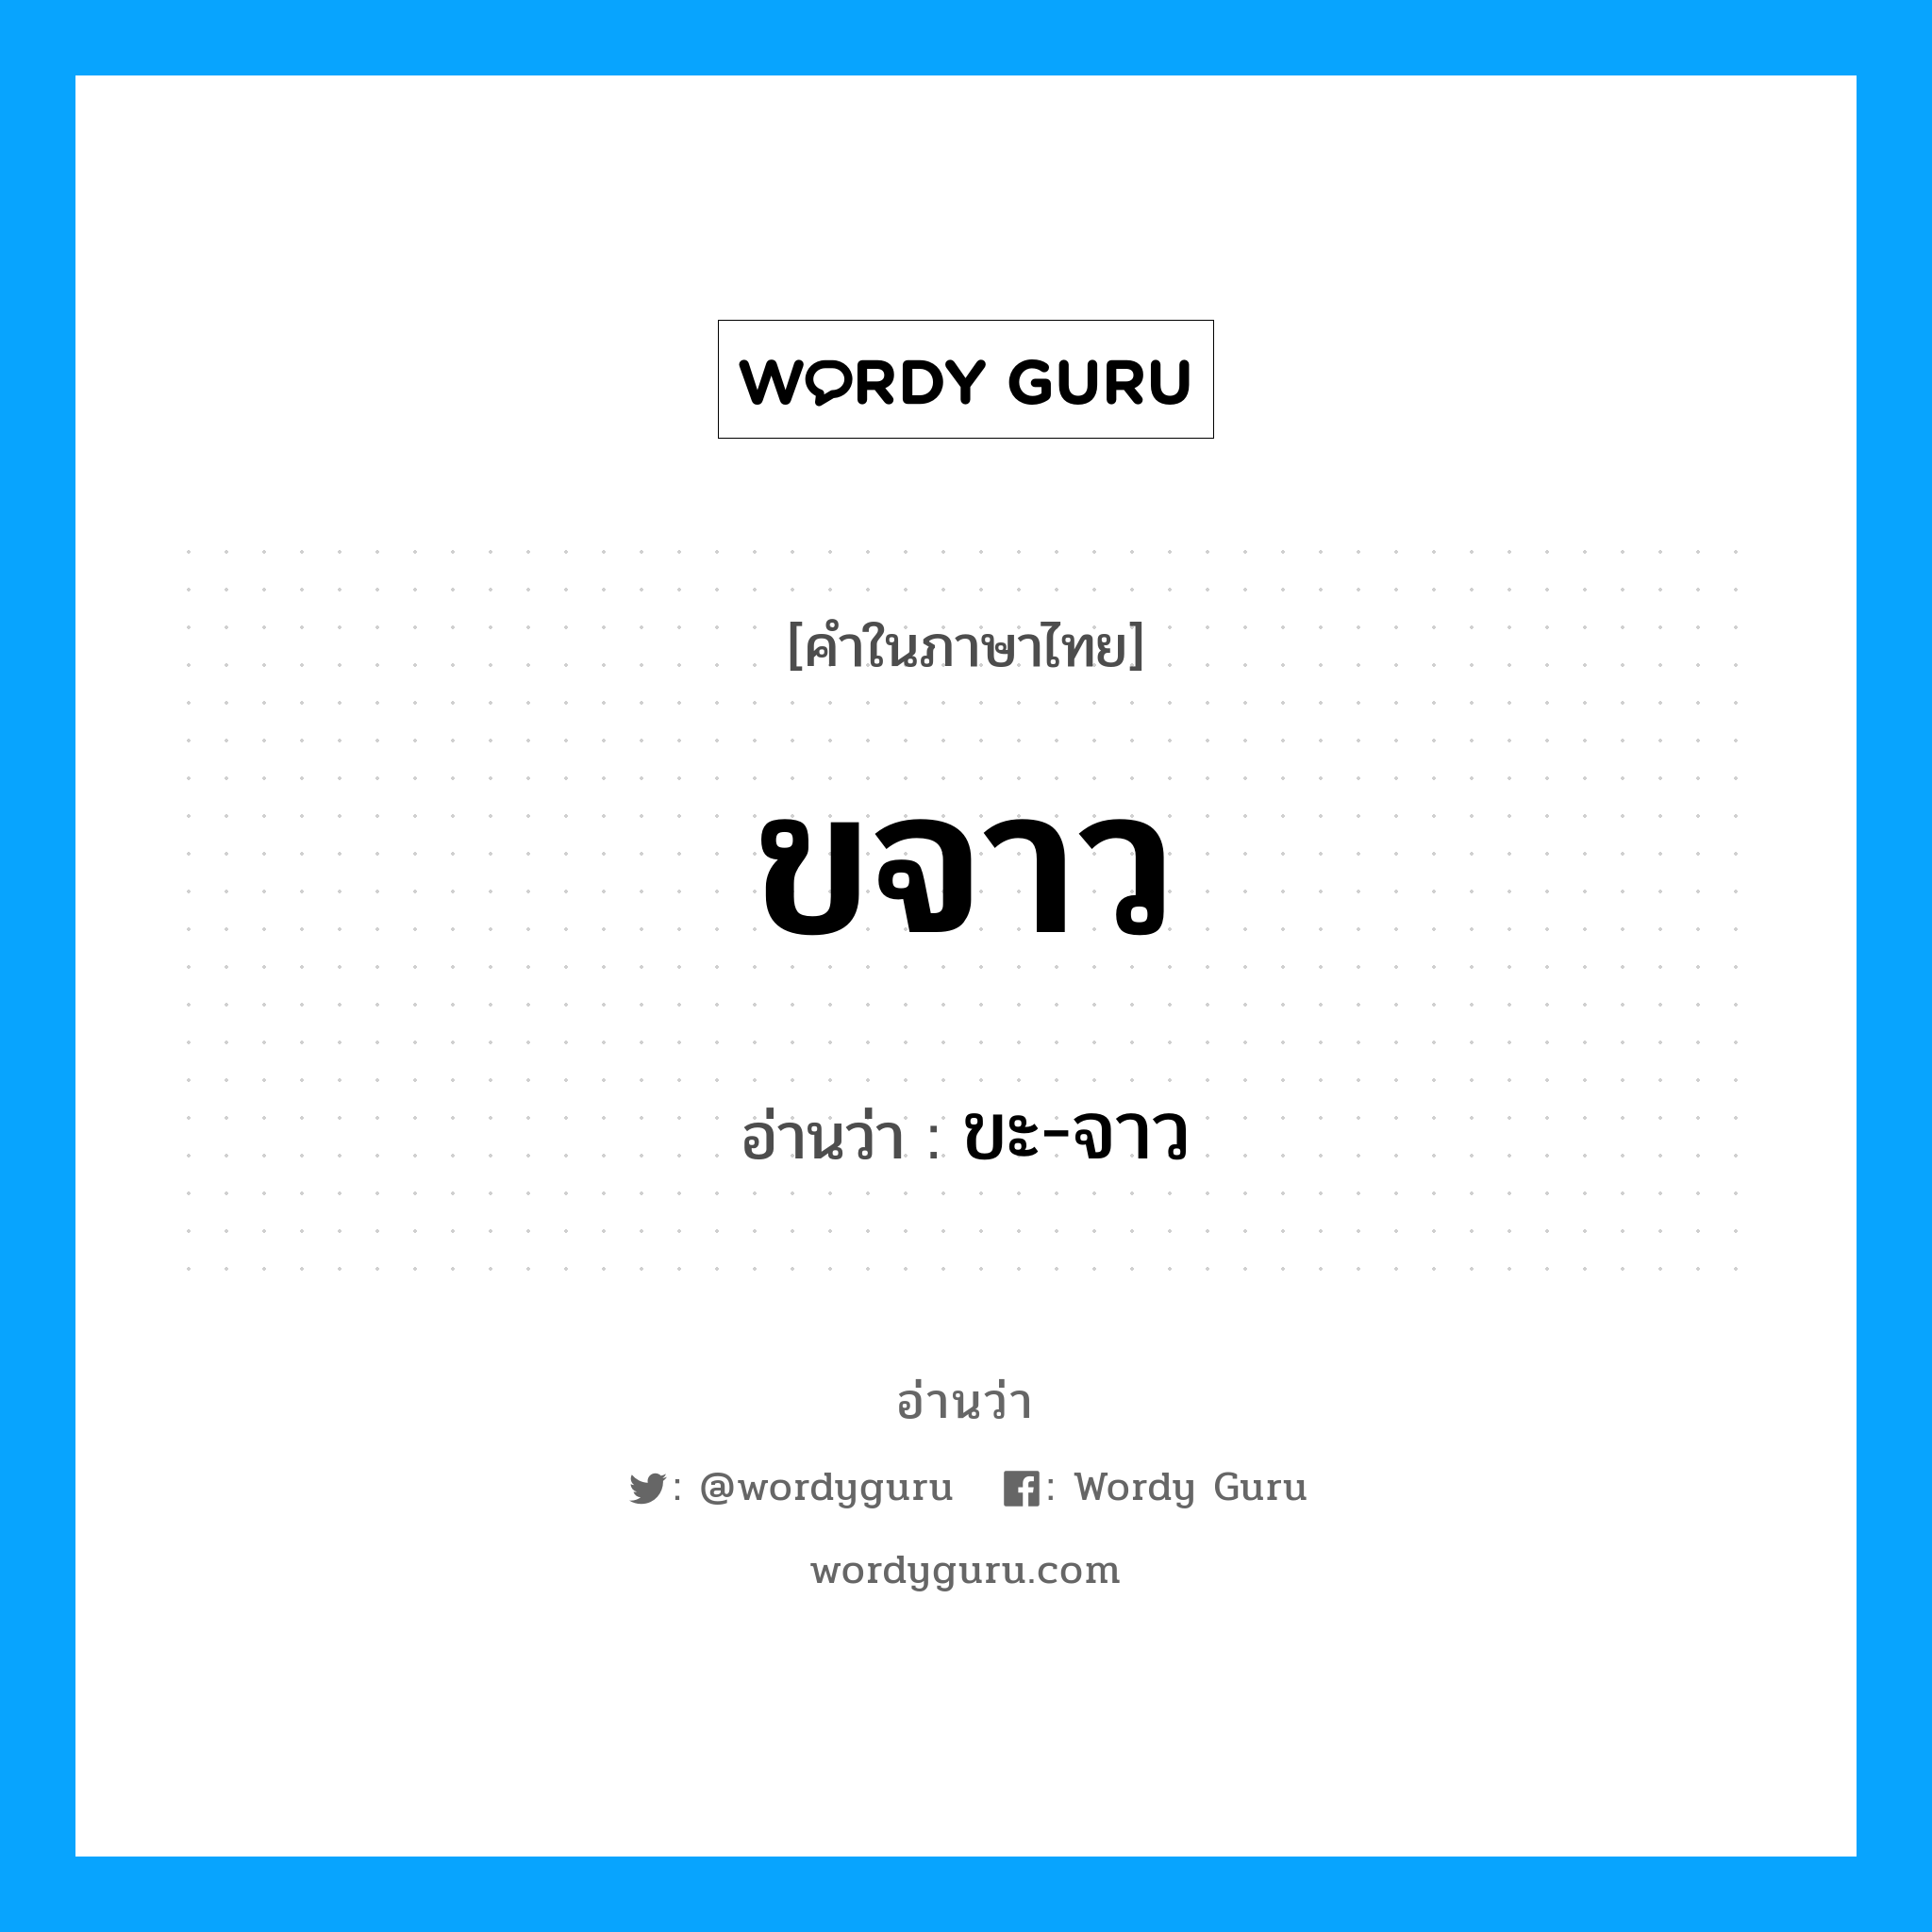 ขะ-จาว เป็นคำอ่านของคำไหน?, คำในภาษาไทย ขะ-จาว อ่านว่า ขจาว